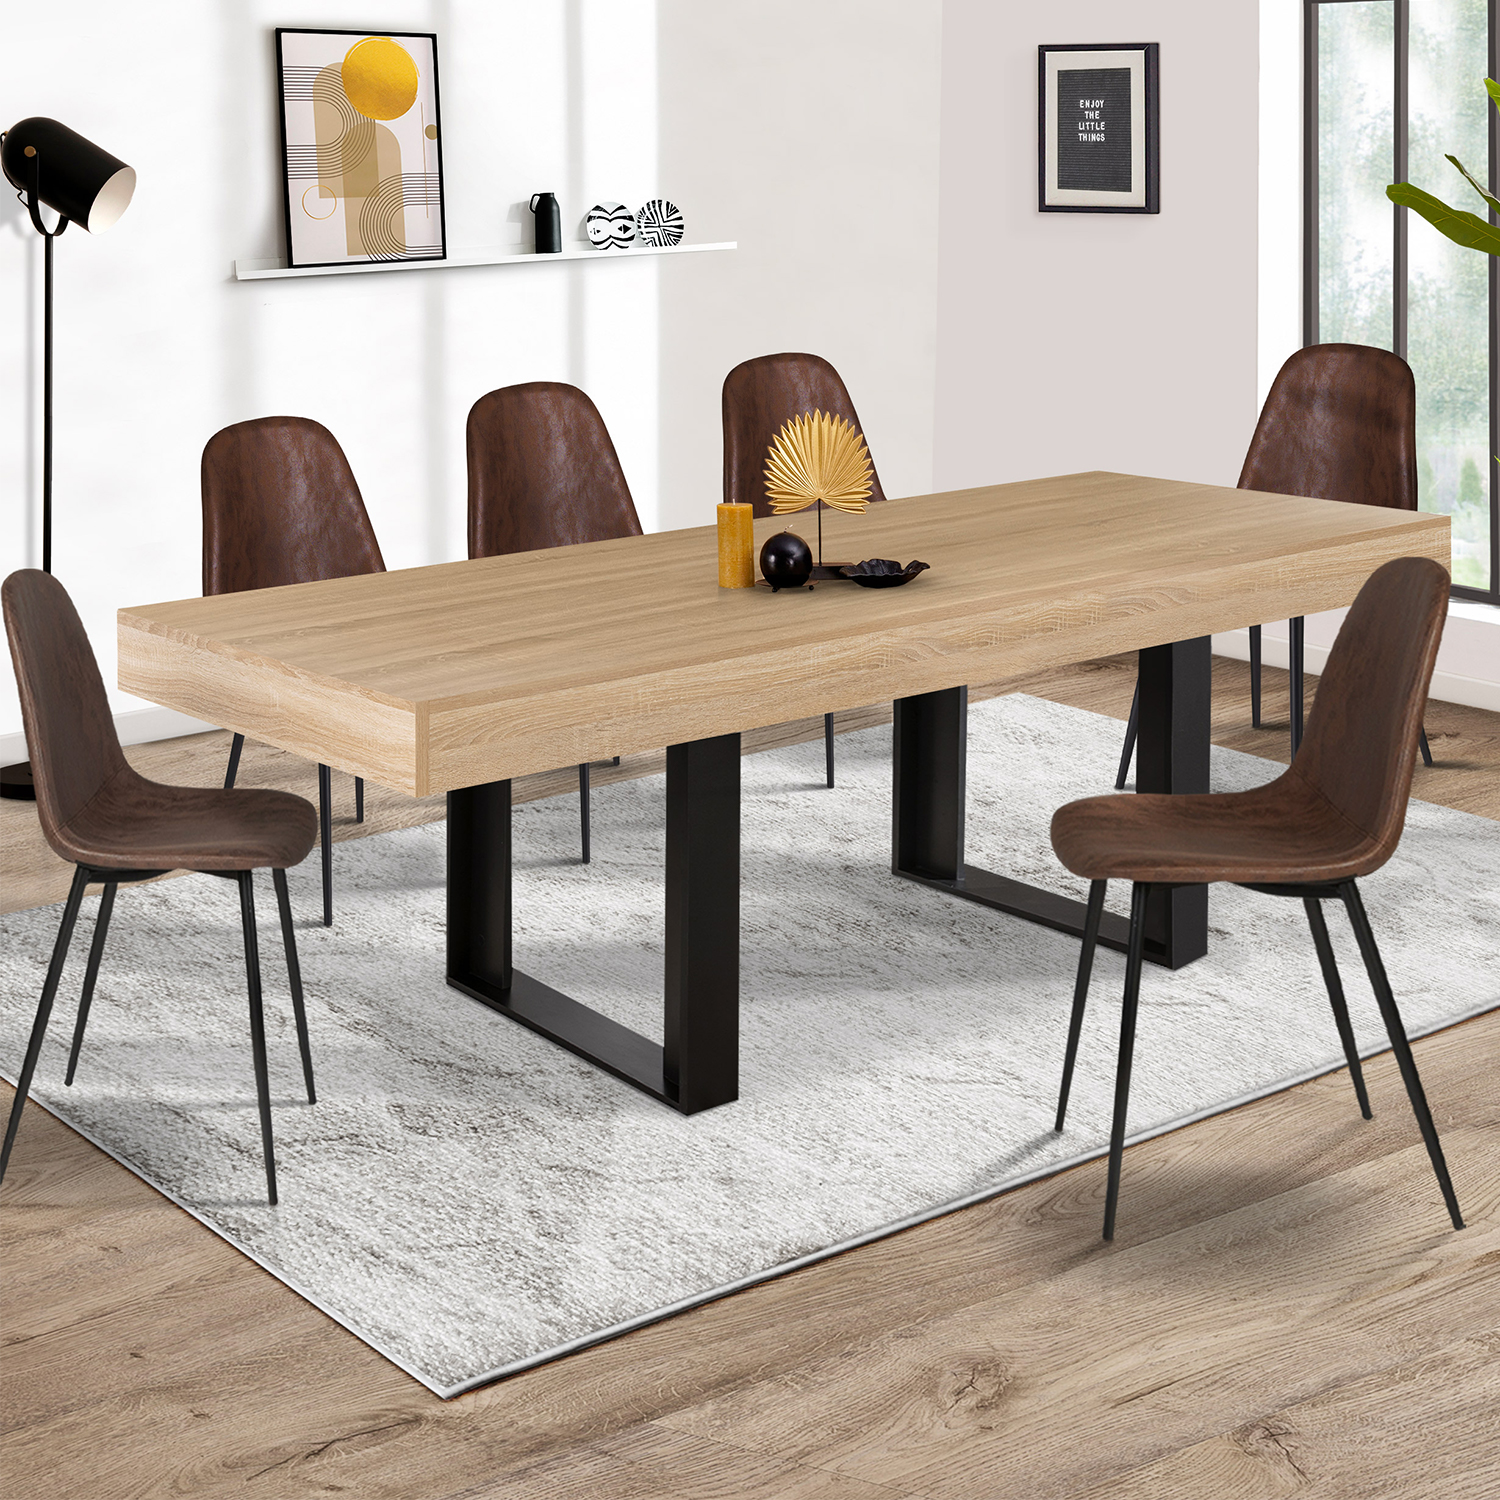 Table à manger industrielle bois et noir 224cm - PHOENIX